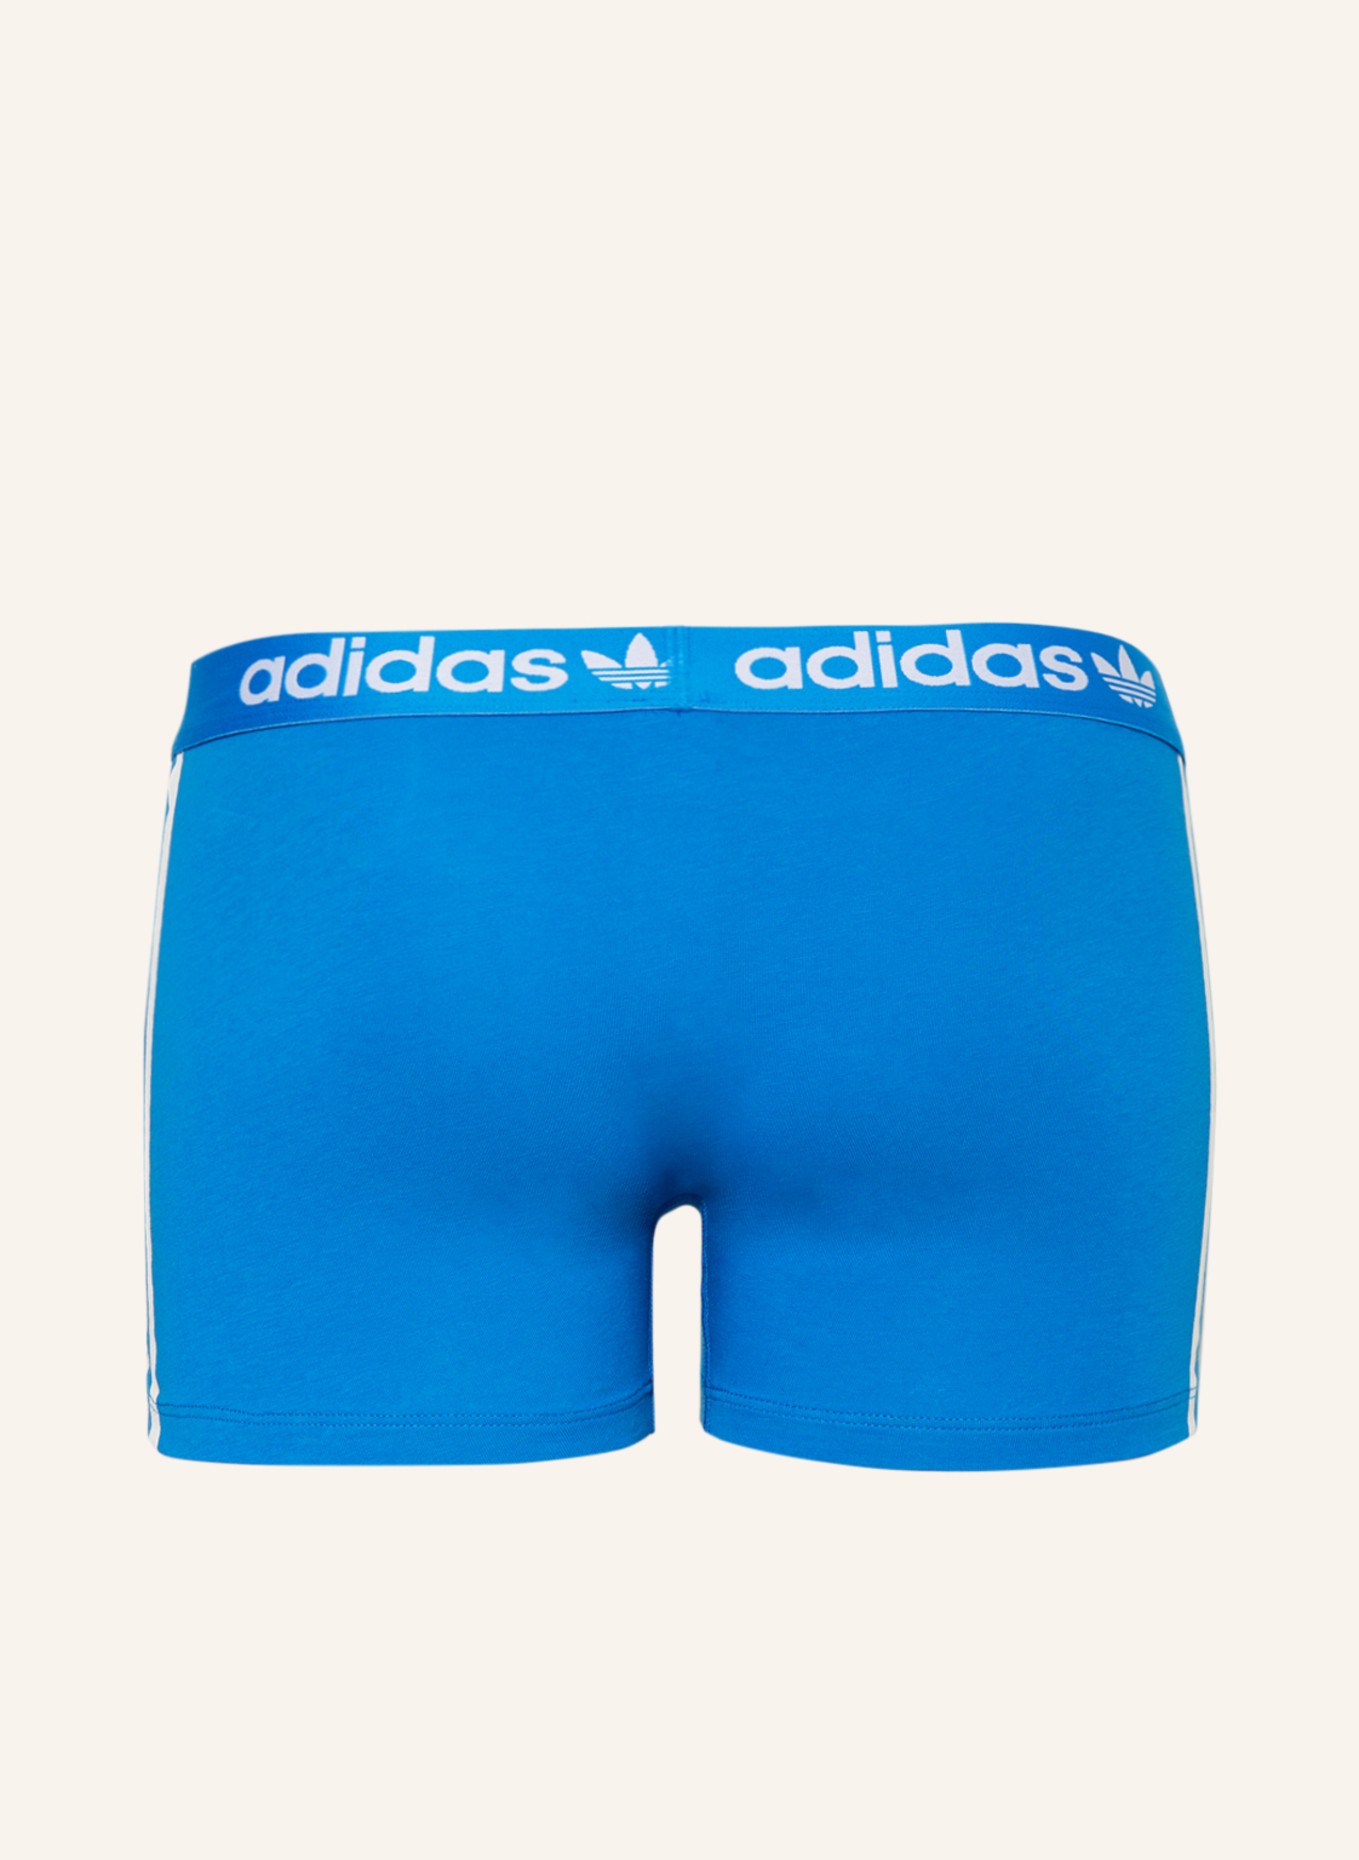 adidas Originals 3er-Pack Boxershorts COTTON in blau/ COMFORT dunkelblau/ 3-STRIPES FLEX rot